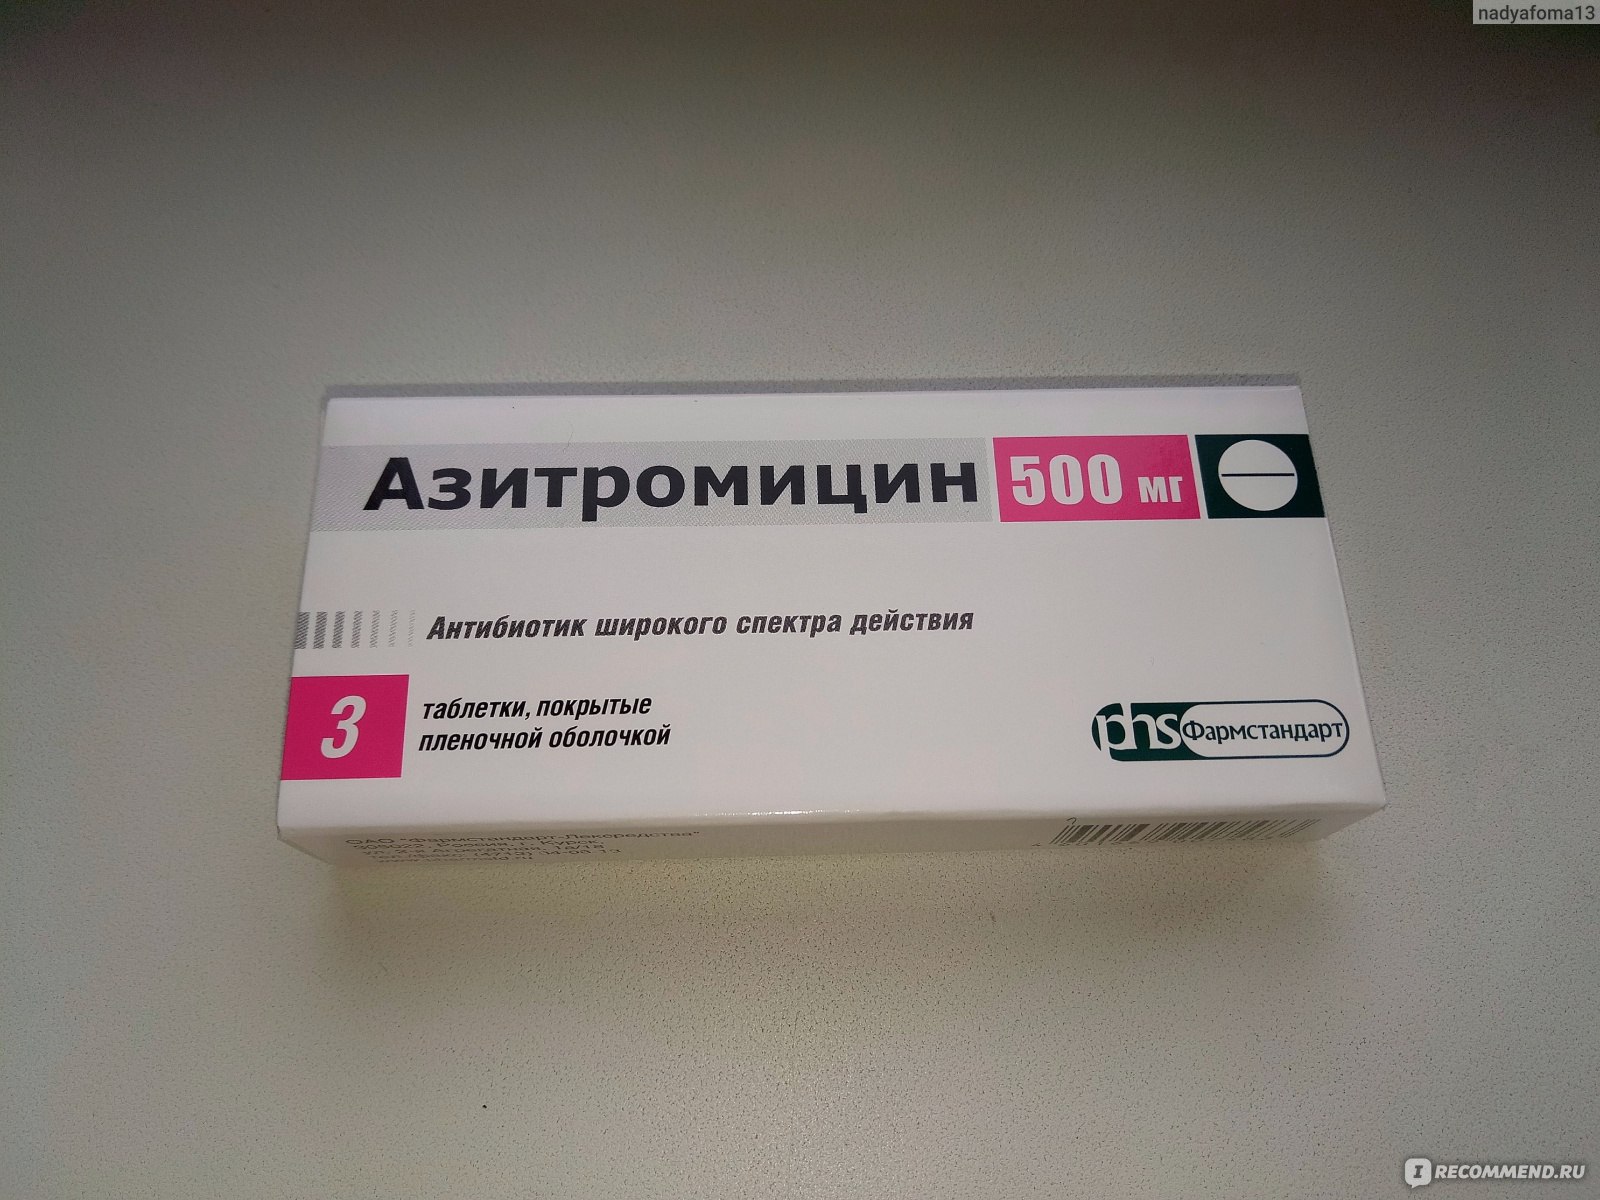 Сильные антибиотики взрослые. Антибиотик Азитромицин 500 мг. Азитромицин 500 мг Фармстандарт. Азитромицин 500 антибиотик широкого спектра. Азитромицин Фармстандарт Лексредства.